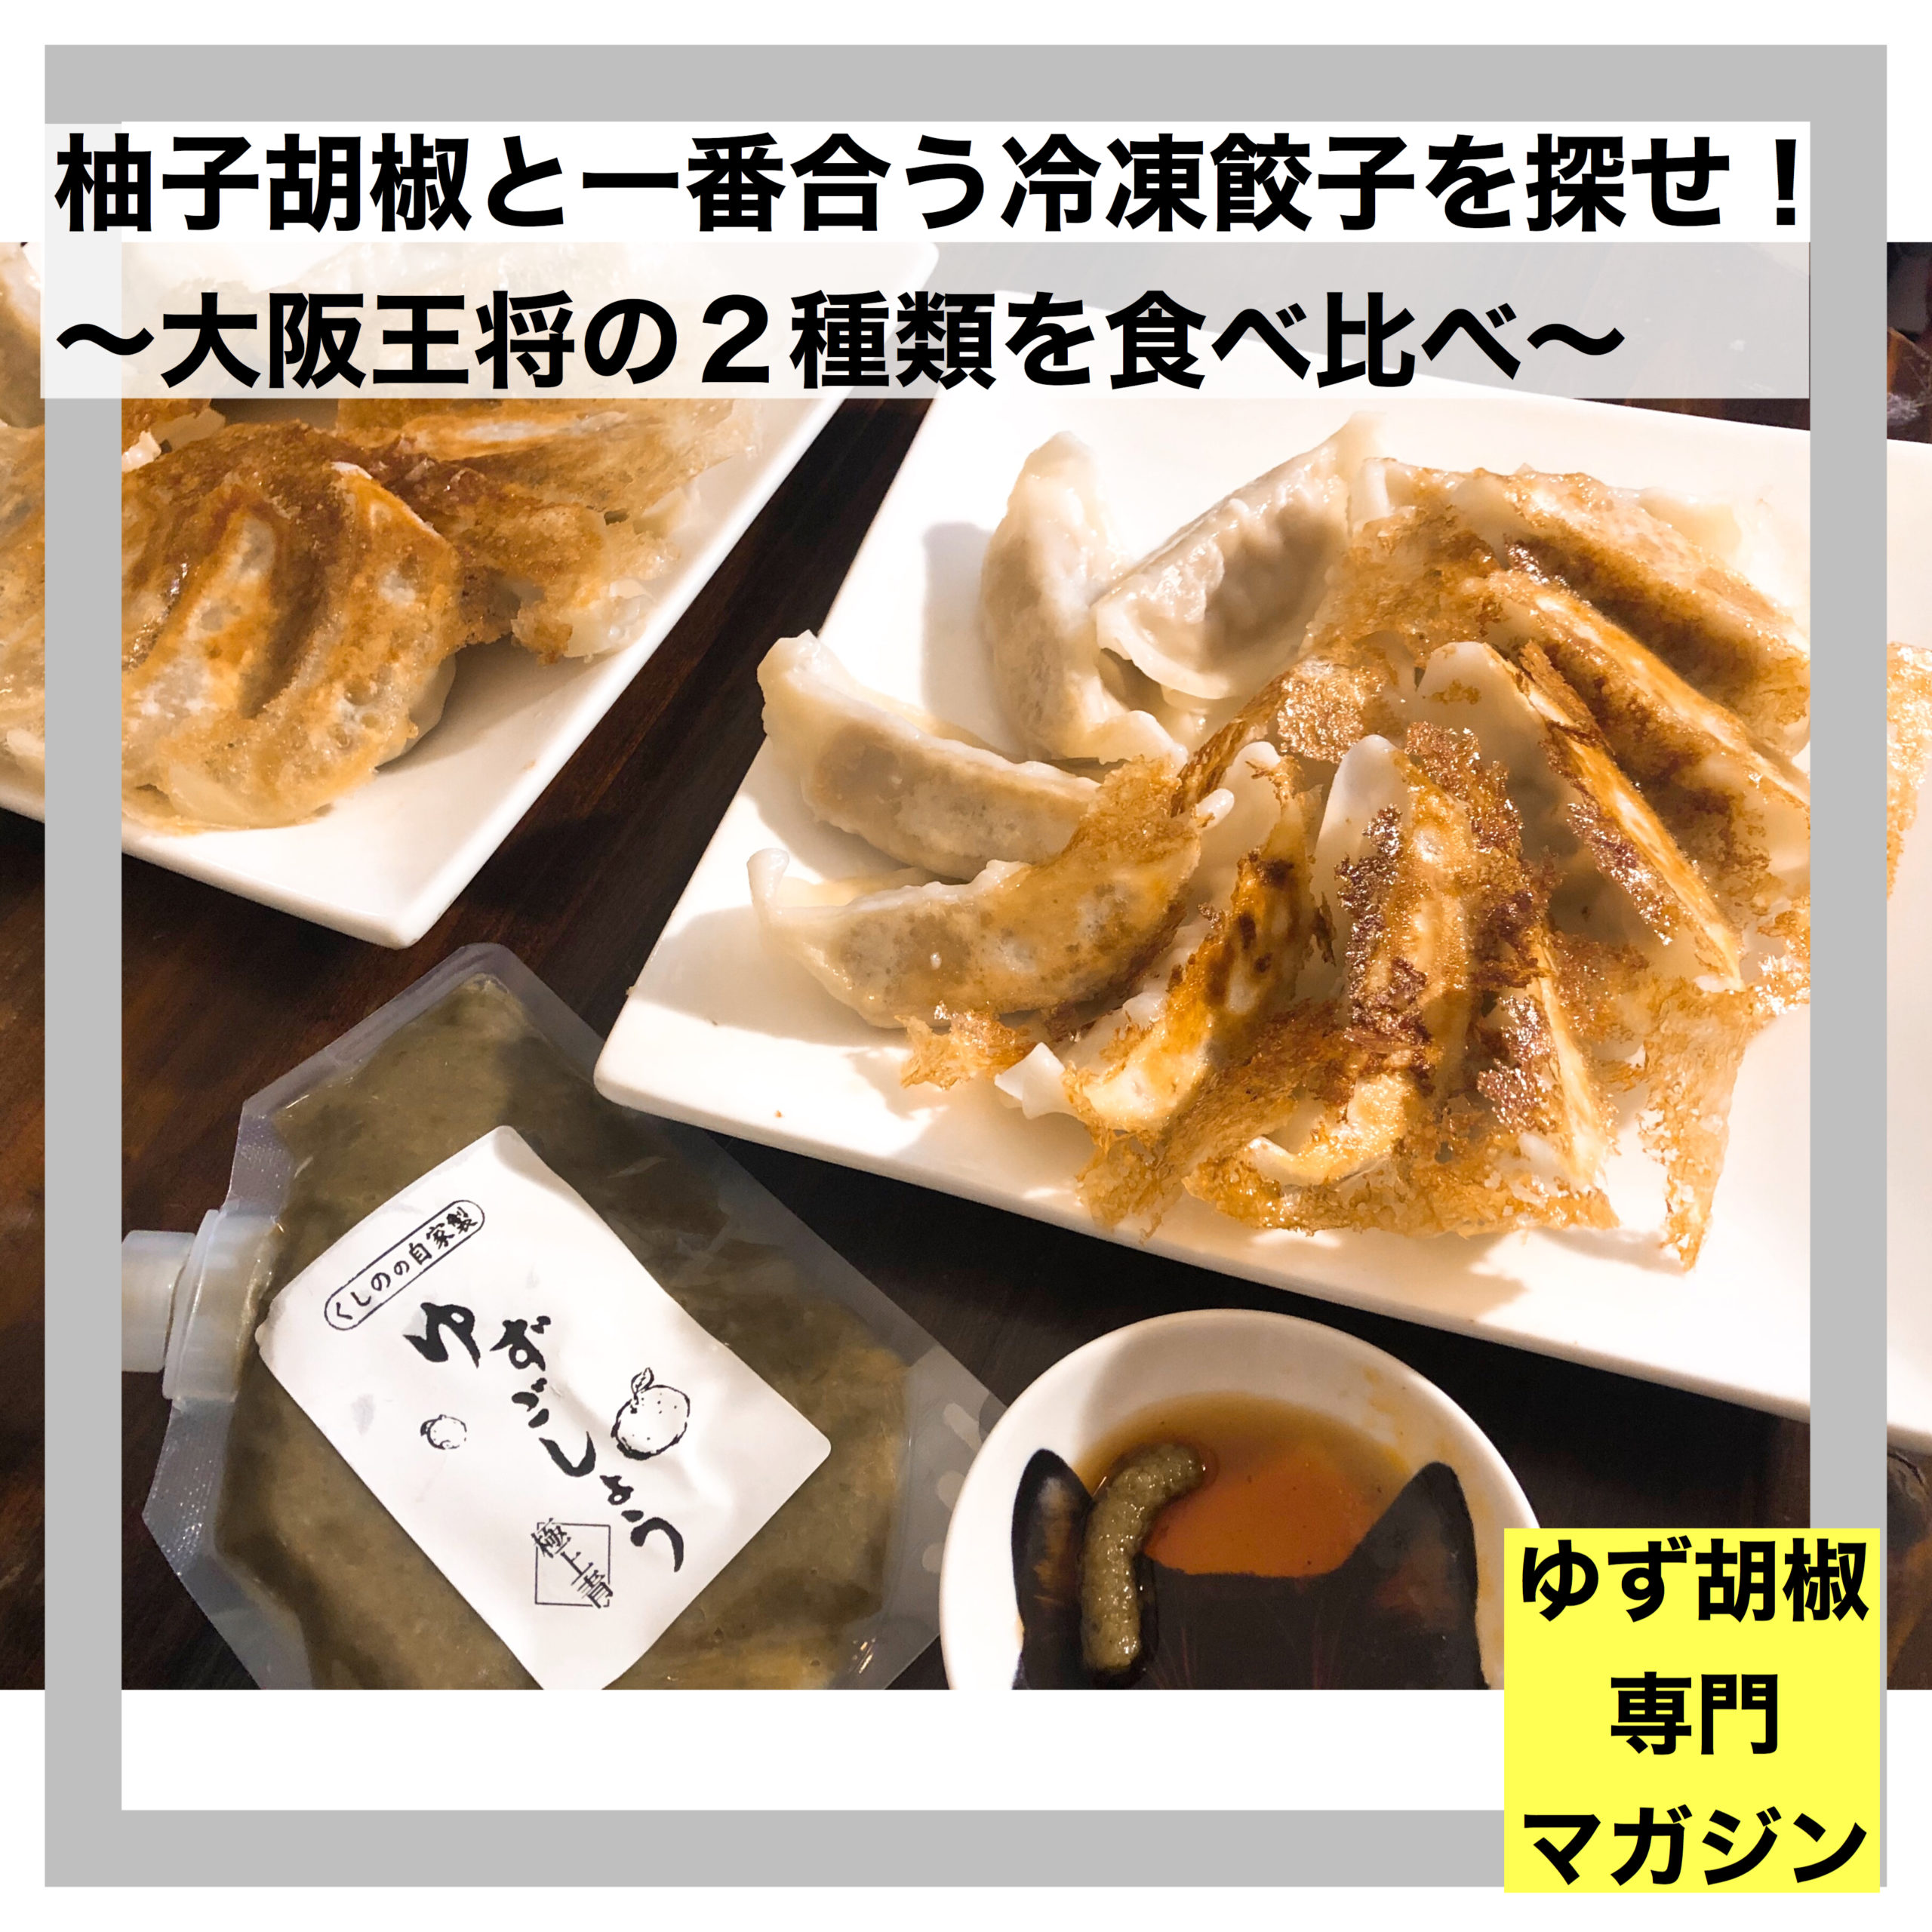 柚子胡椒と一番合う冷凍餃子を探せ 大阪王将の２種類を食べ比べ ゆず胡椒専門マガジン